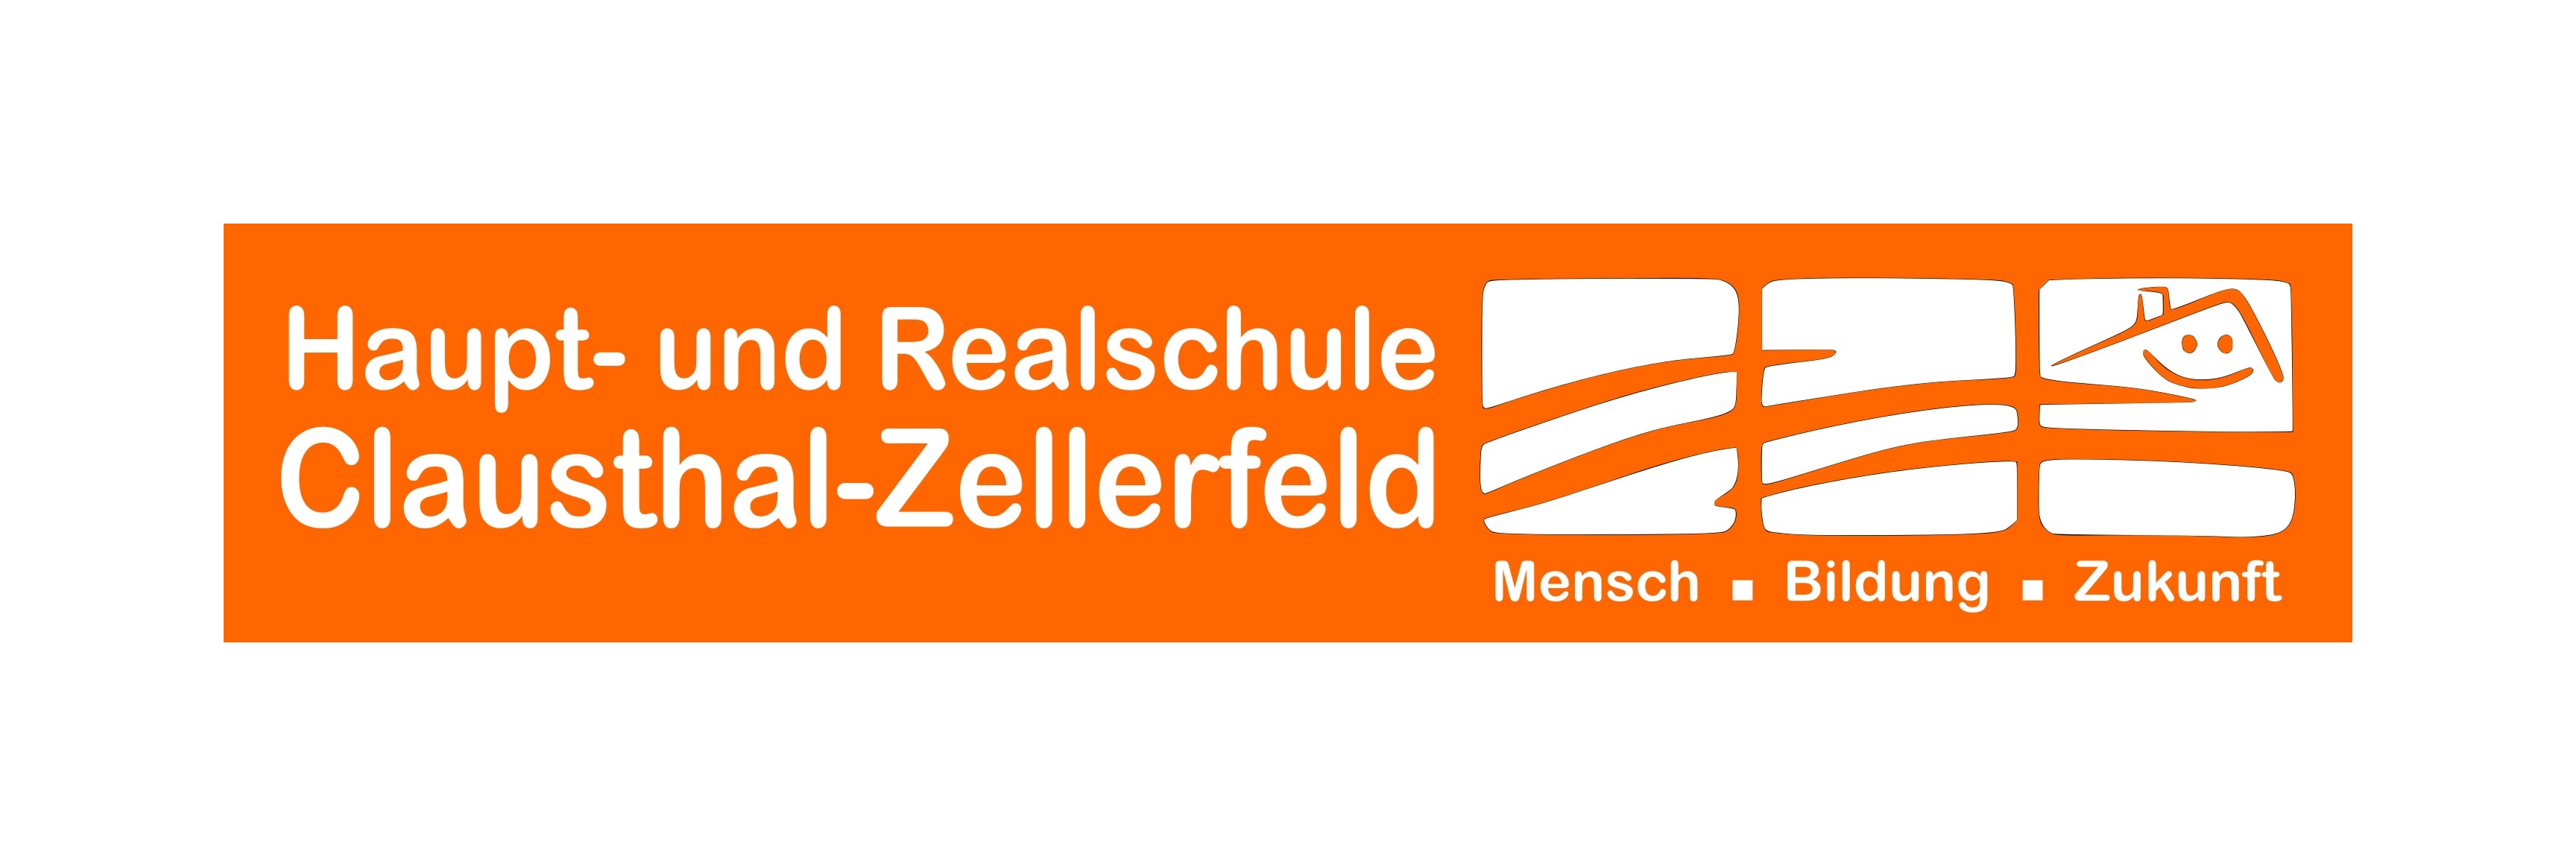 Haupt- und Realschule Clausthal-Zellerfeld